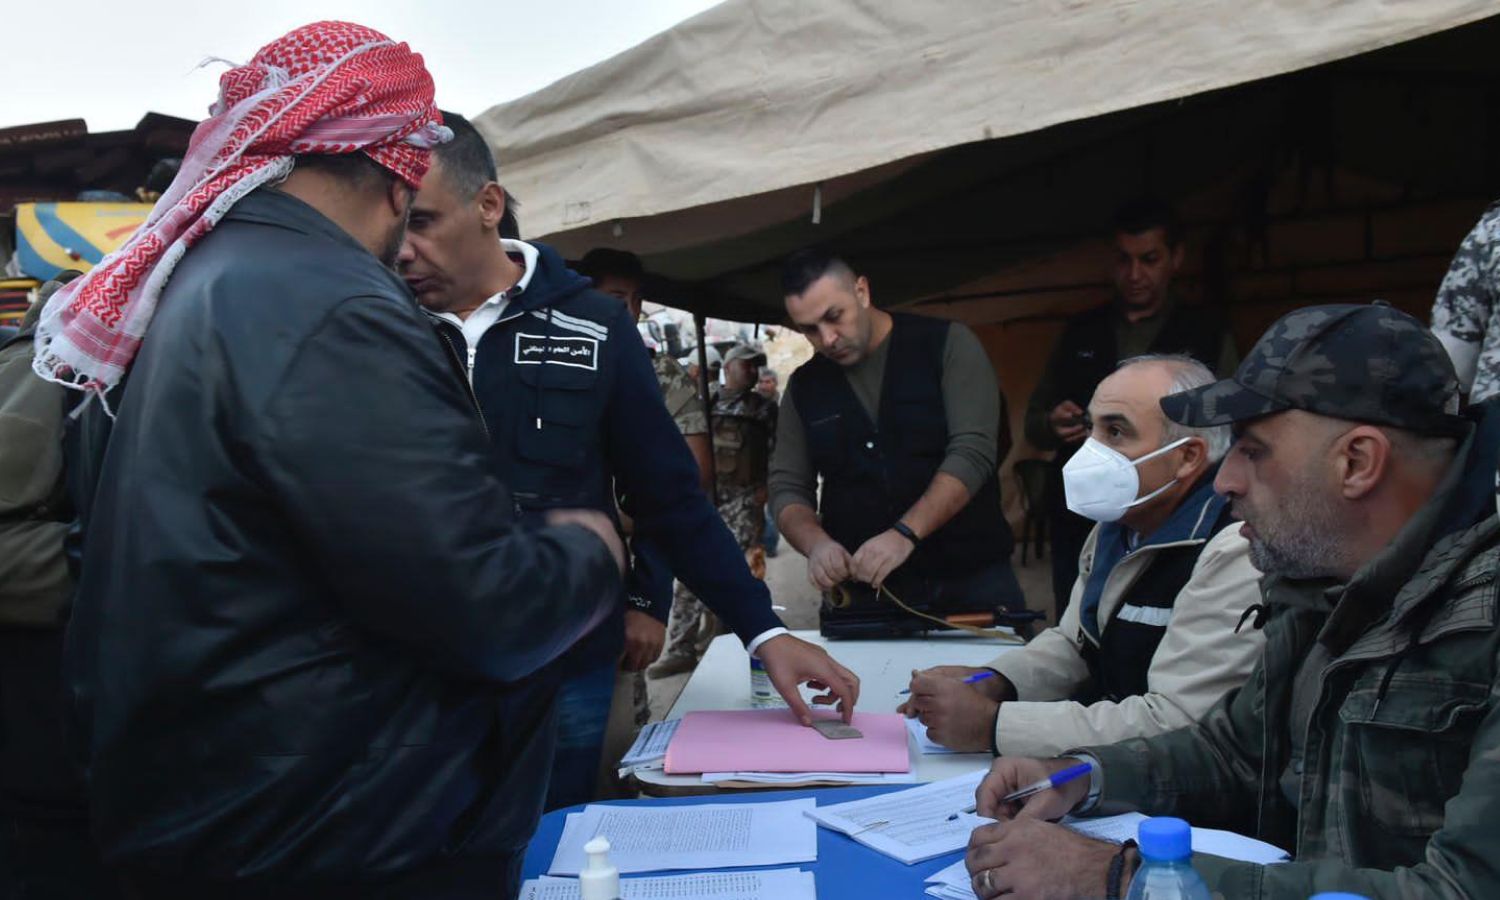 عناصر من "الأمن العام اللبناني" يشرفون على سير عملية عودة اللاجئين السوريين إلى سوريا من وادي حميد قرب بلدة عرسال الحدودية اللبنانية- 26 من تشرين الأول 2022 (النهار)